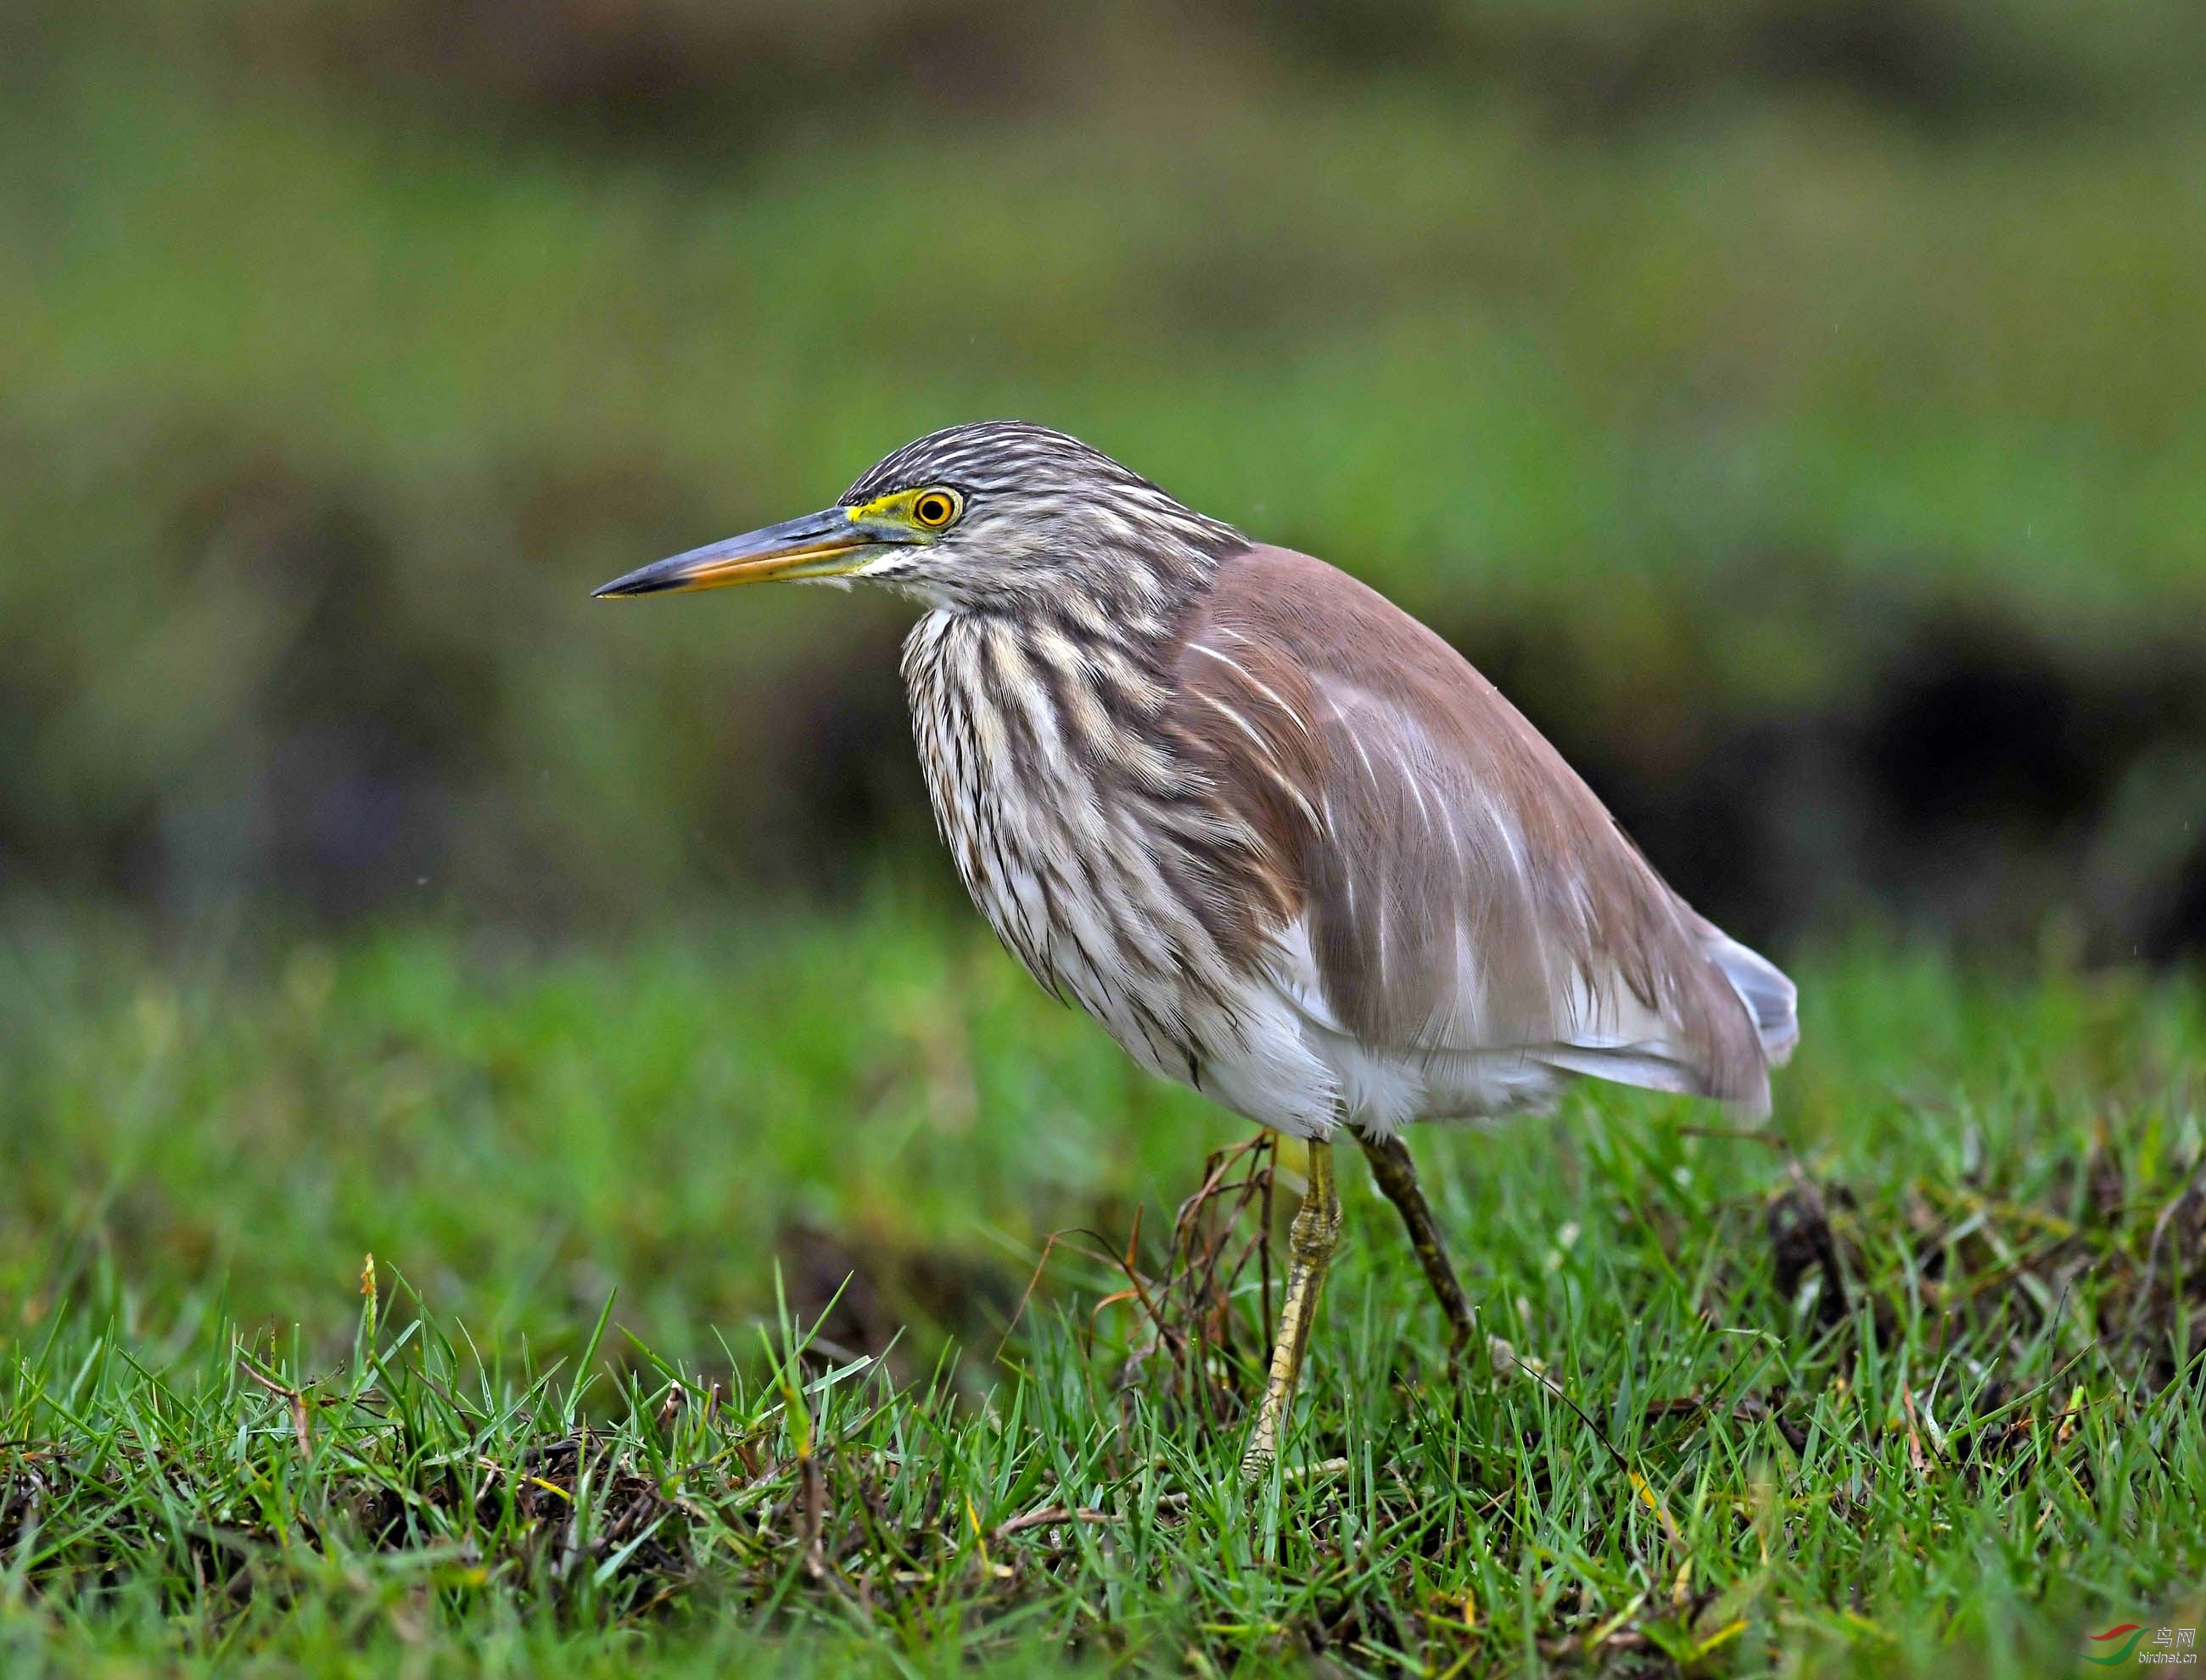 海南岛常见鸟类大全图片